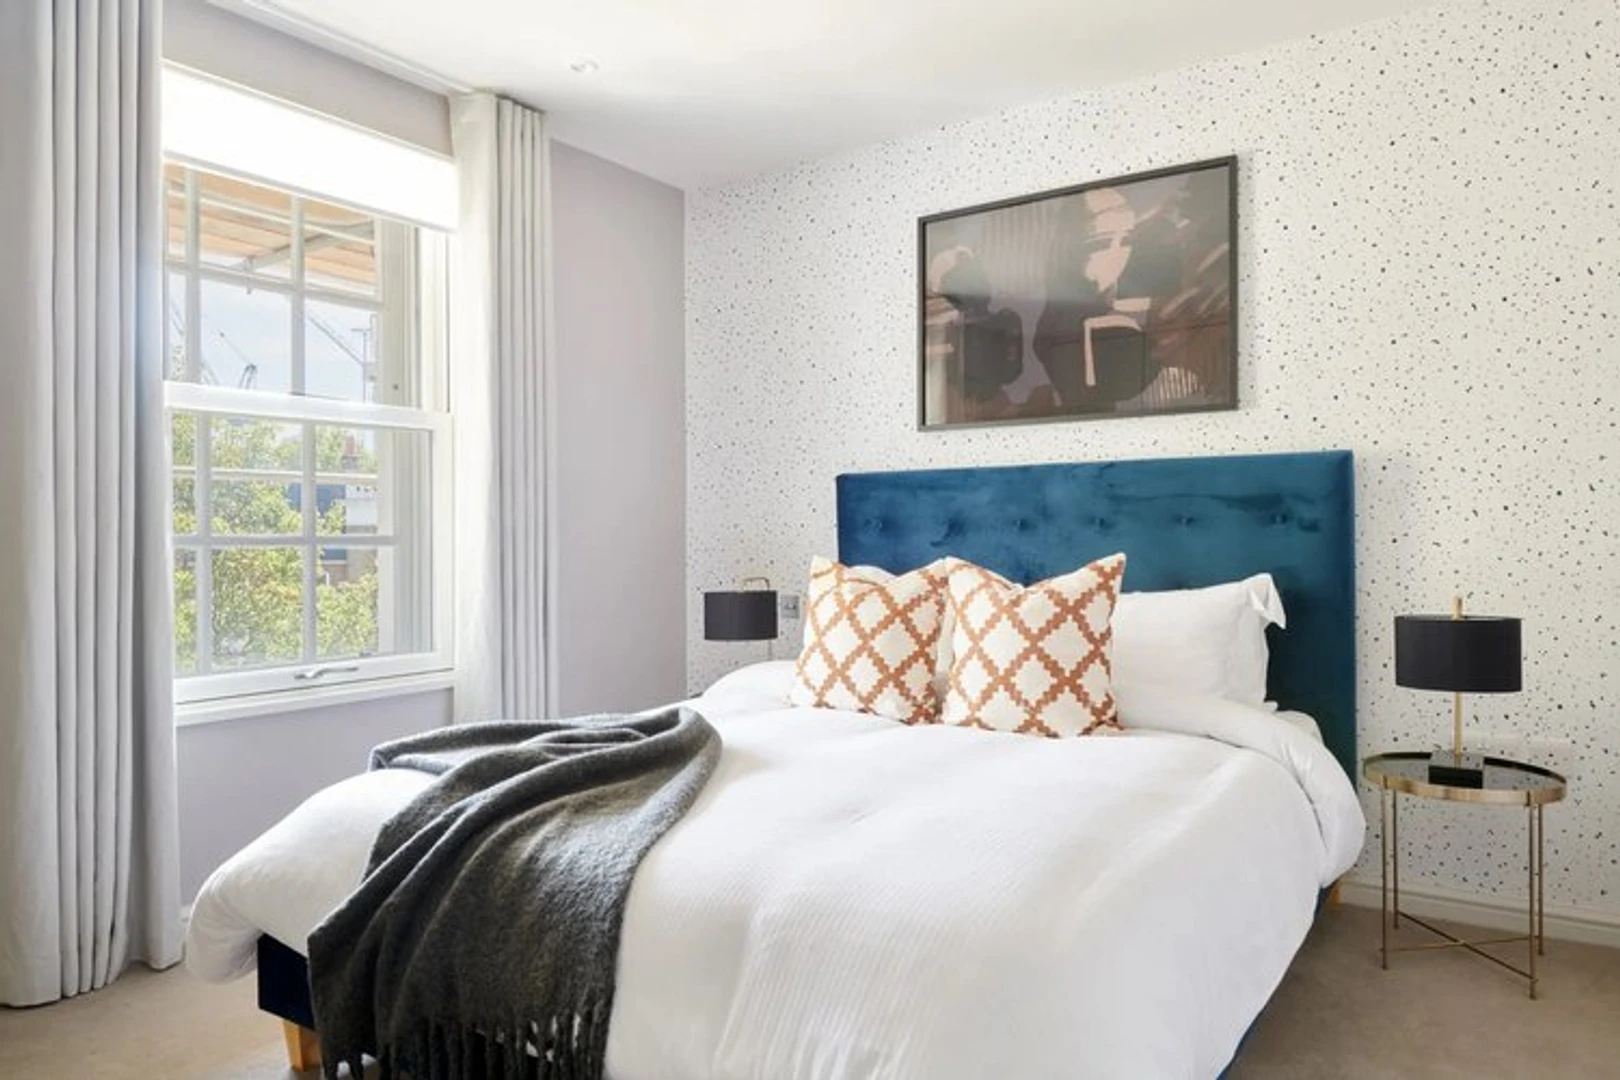 City Of Westminster de çift kişilik yataklı kiralık oda